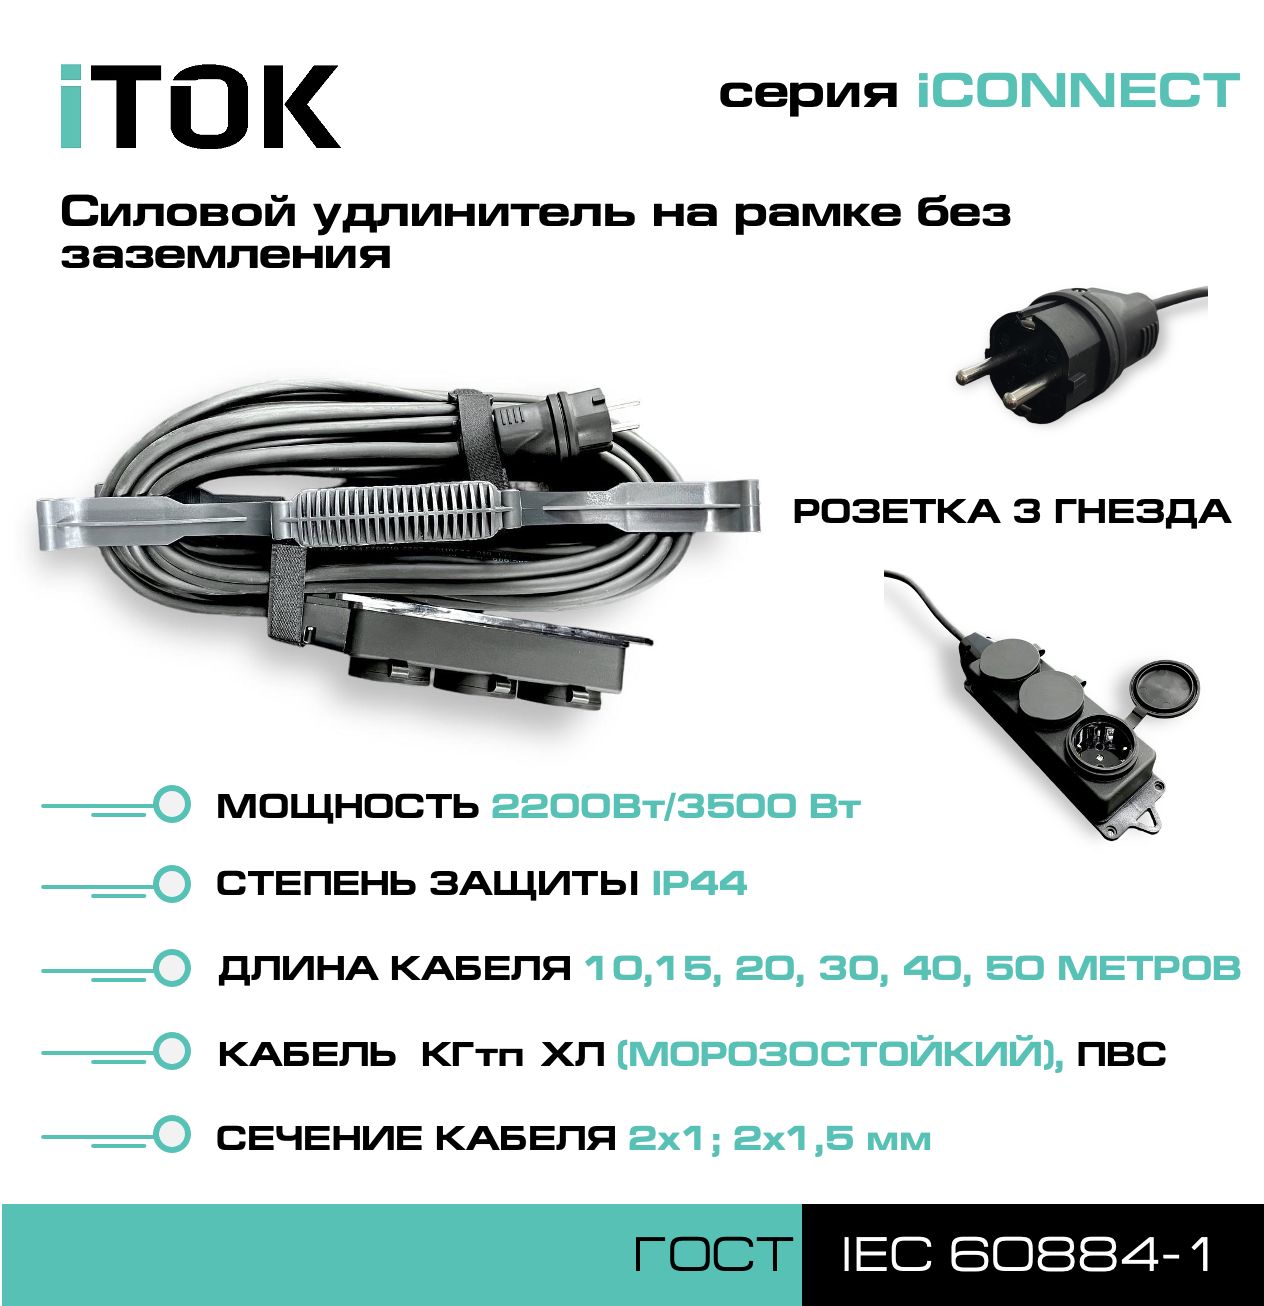 Удлинитель на рамке без земли серии iTOK iCONNECT КГтп-ХЛ 2х1,5 мм 3 гнезда IP44 10 м зарядные гнезда usb в виде клавиши marina 4 2 а вольтметр more 10264238